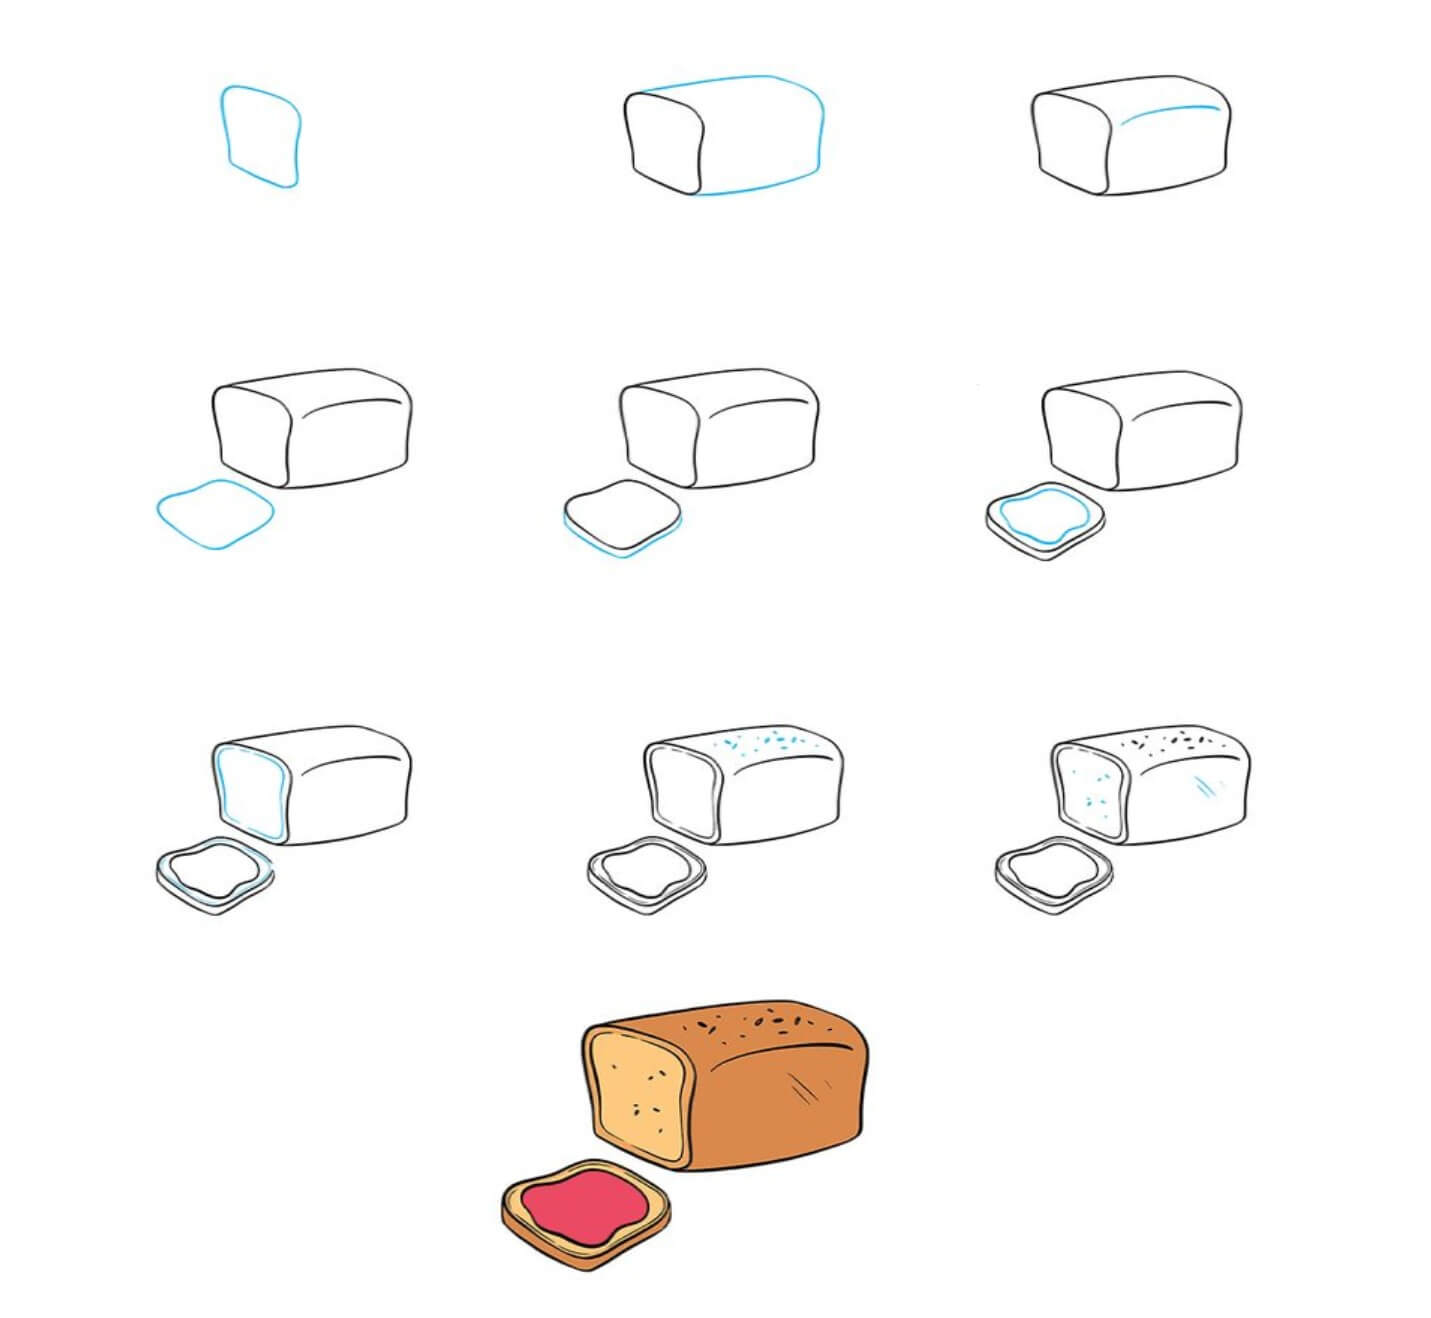 Sweet bread Drawing Ideas